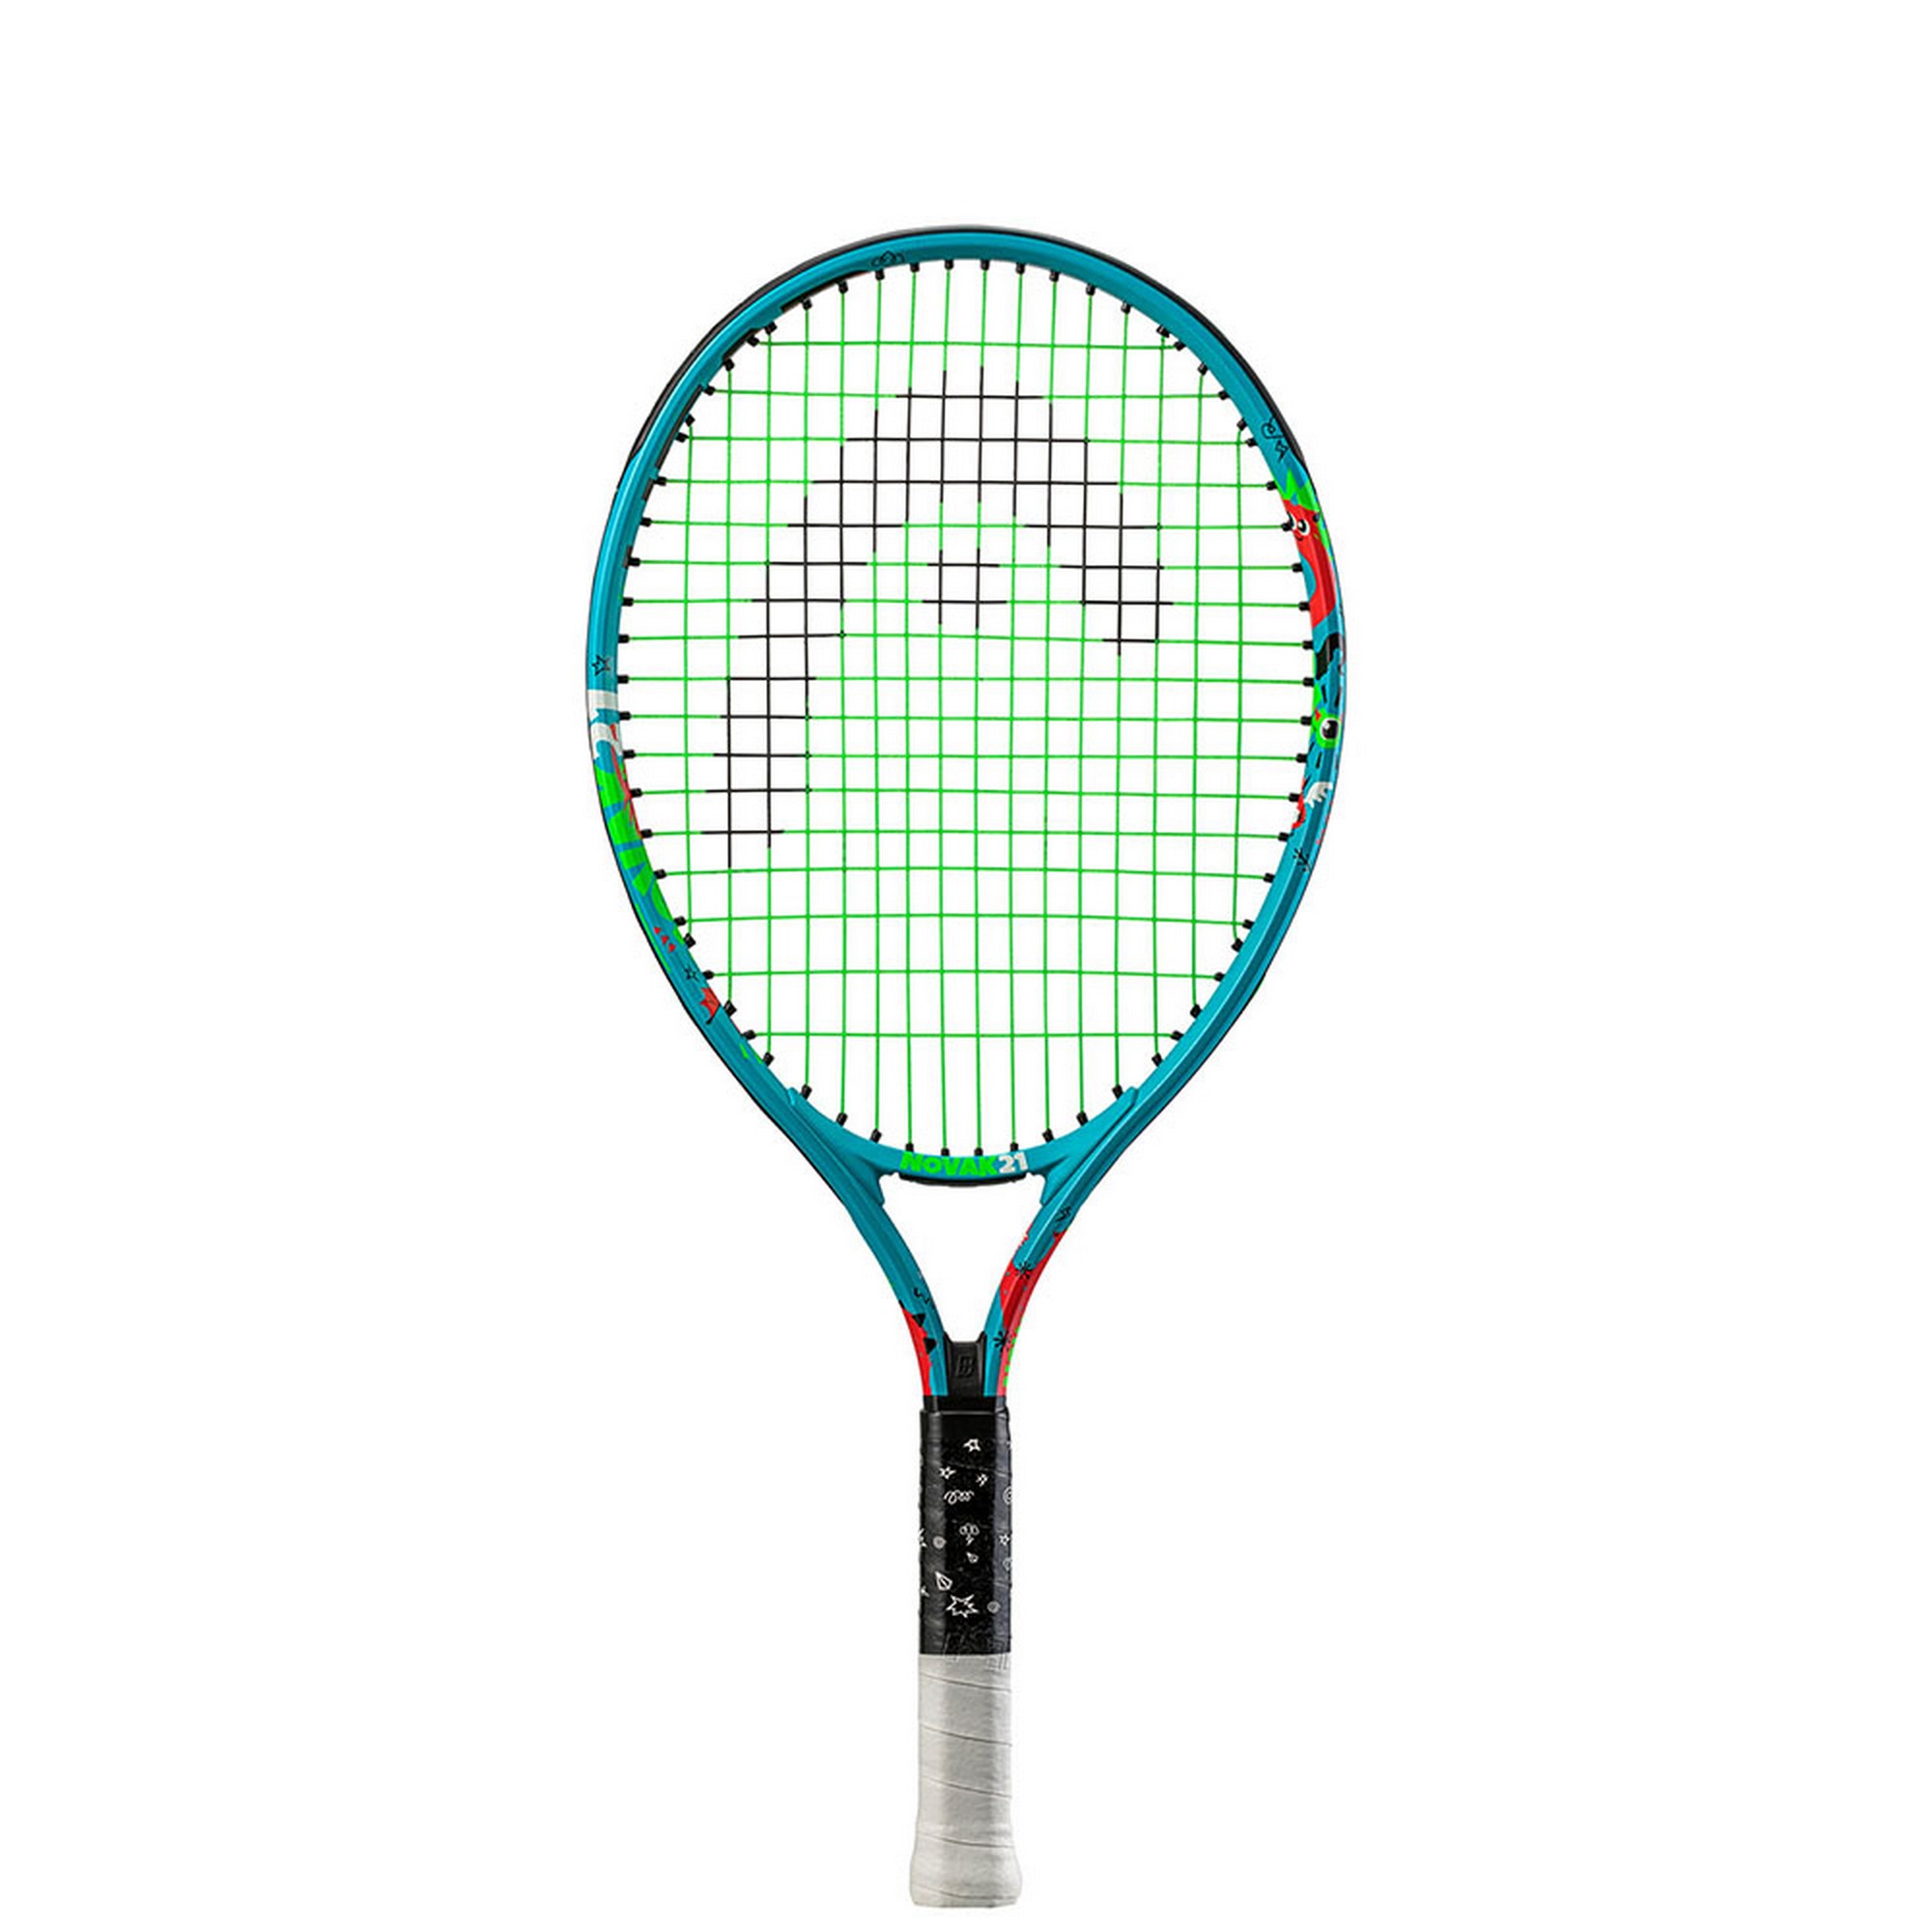 Ракетка для большого тенниса детская Head Novak 19 Gr05 233132 сине-желтый 2000_2000